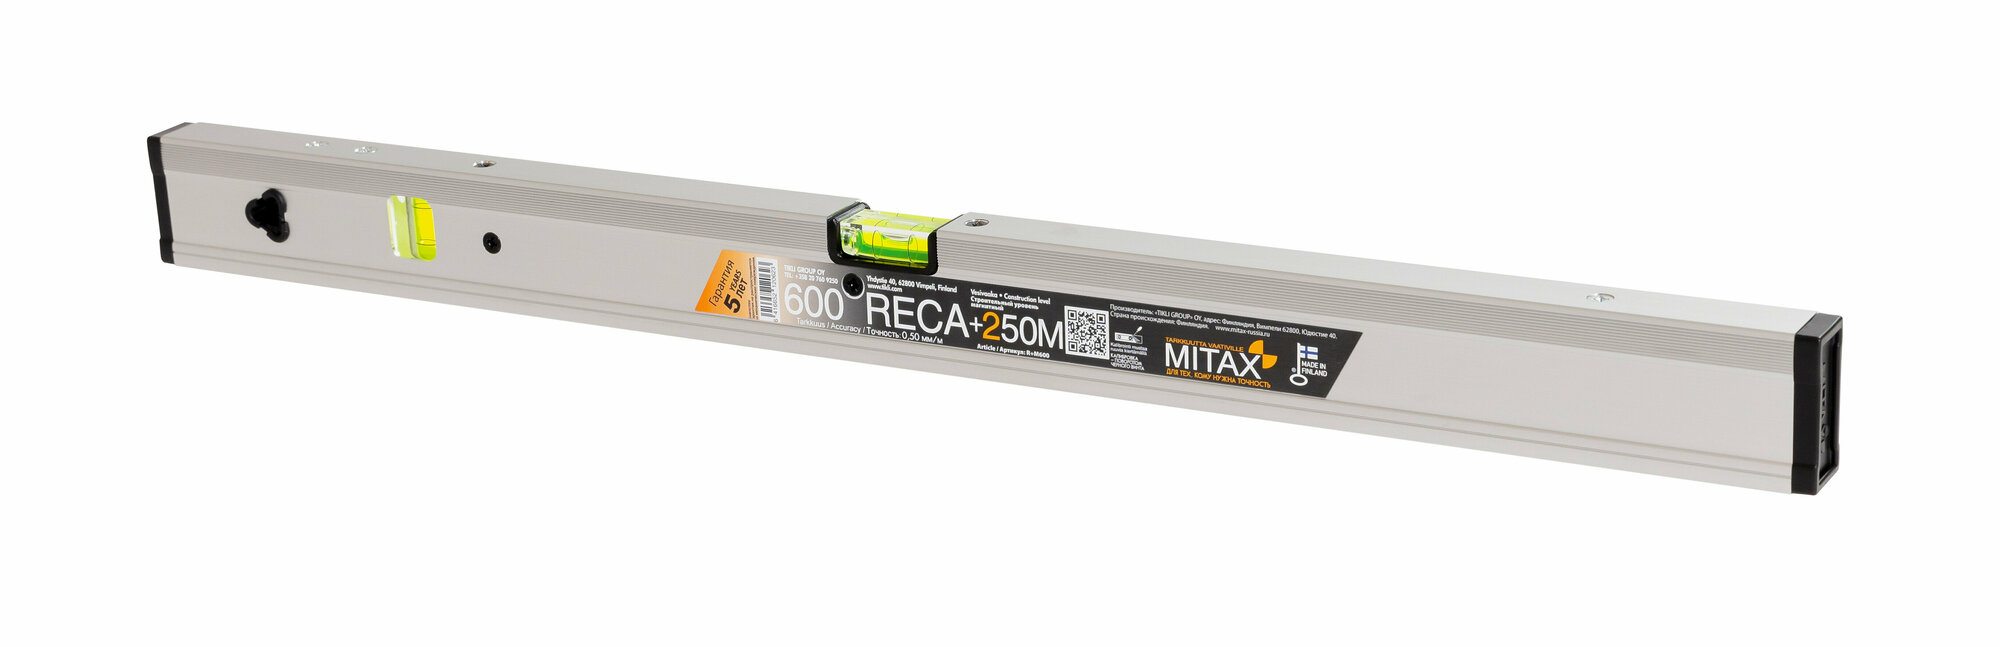 Уровень MITAX 600 RECA+250M PROMO магнитный 600мм R+M600P - фото №7